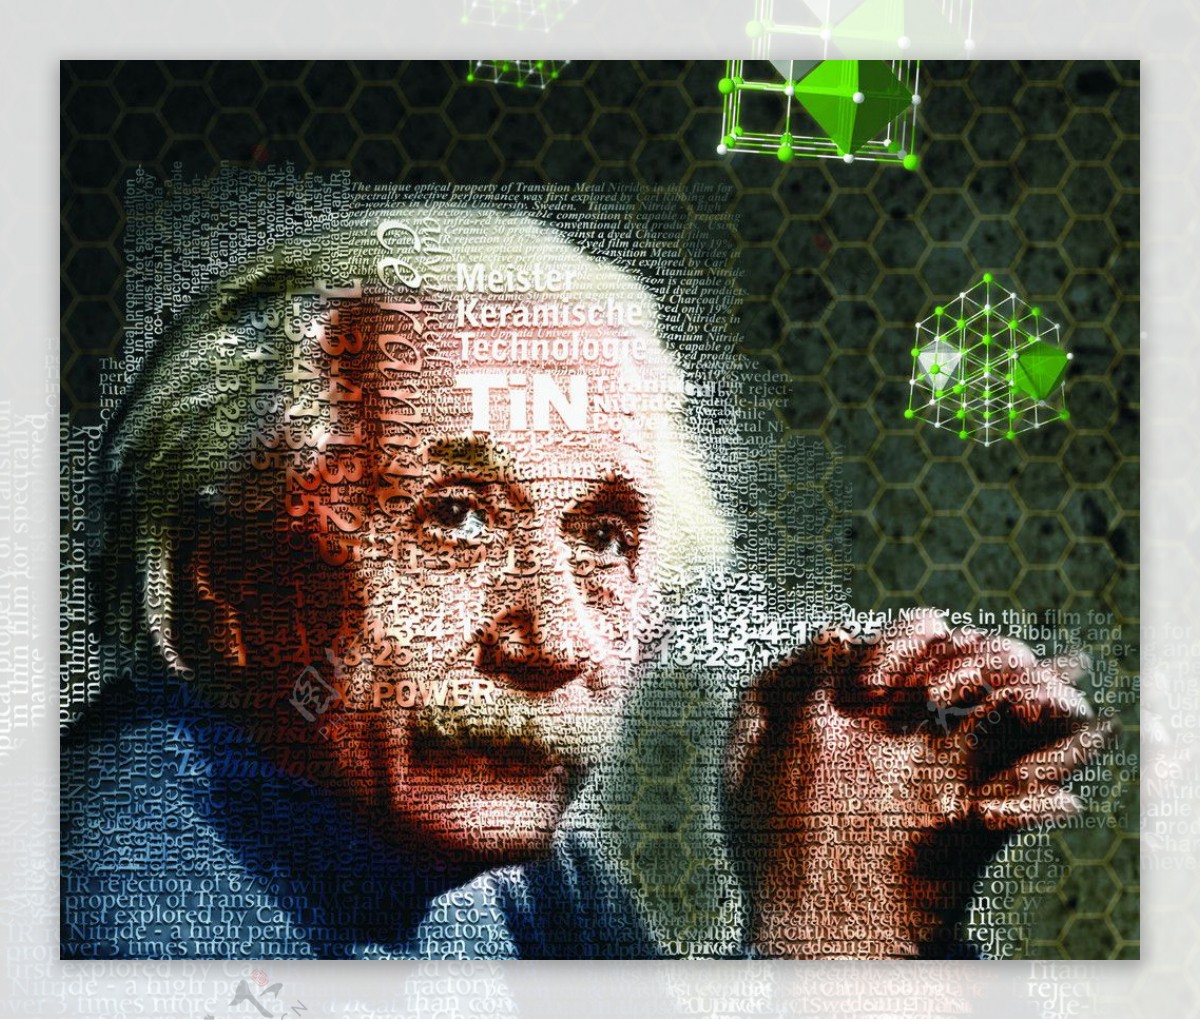 爱因斯坦头像图片